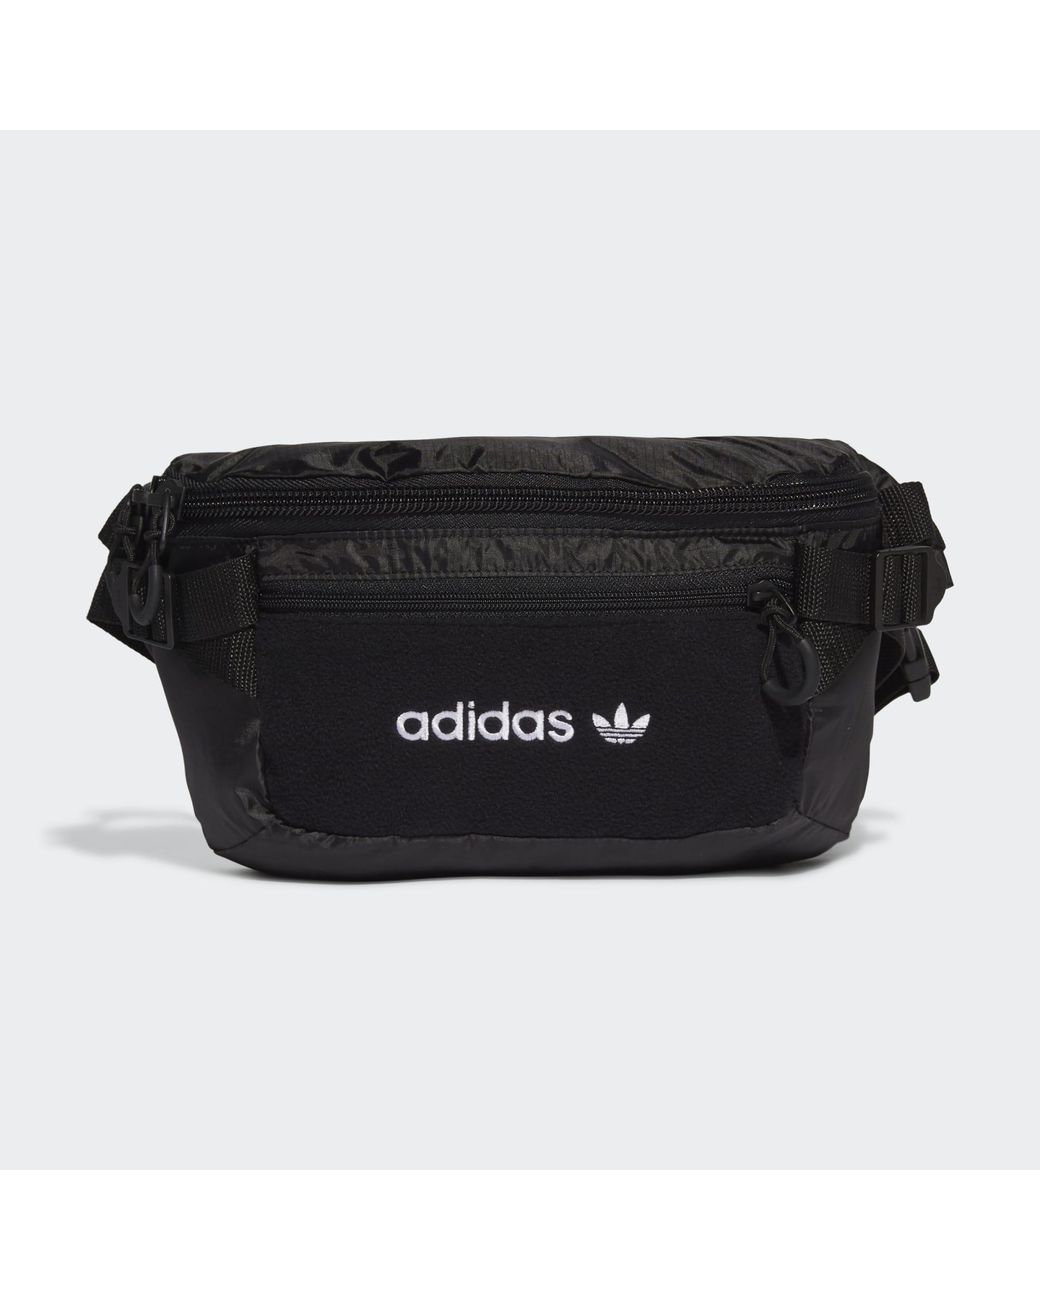 adidas Originals Premium Essentials Waist Bag in Black for Men | Lyst